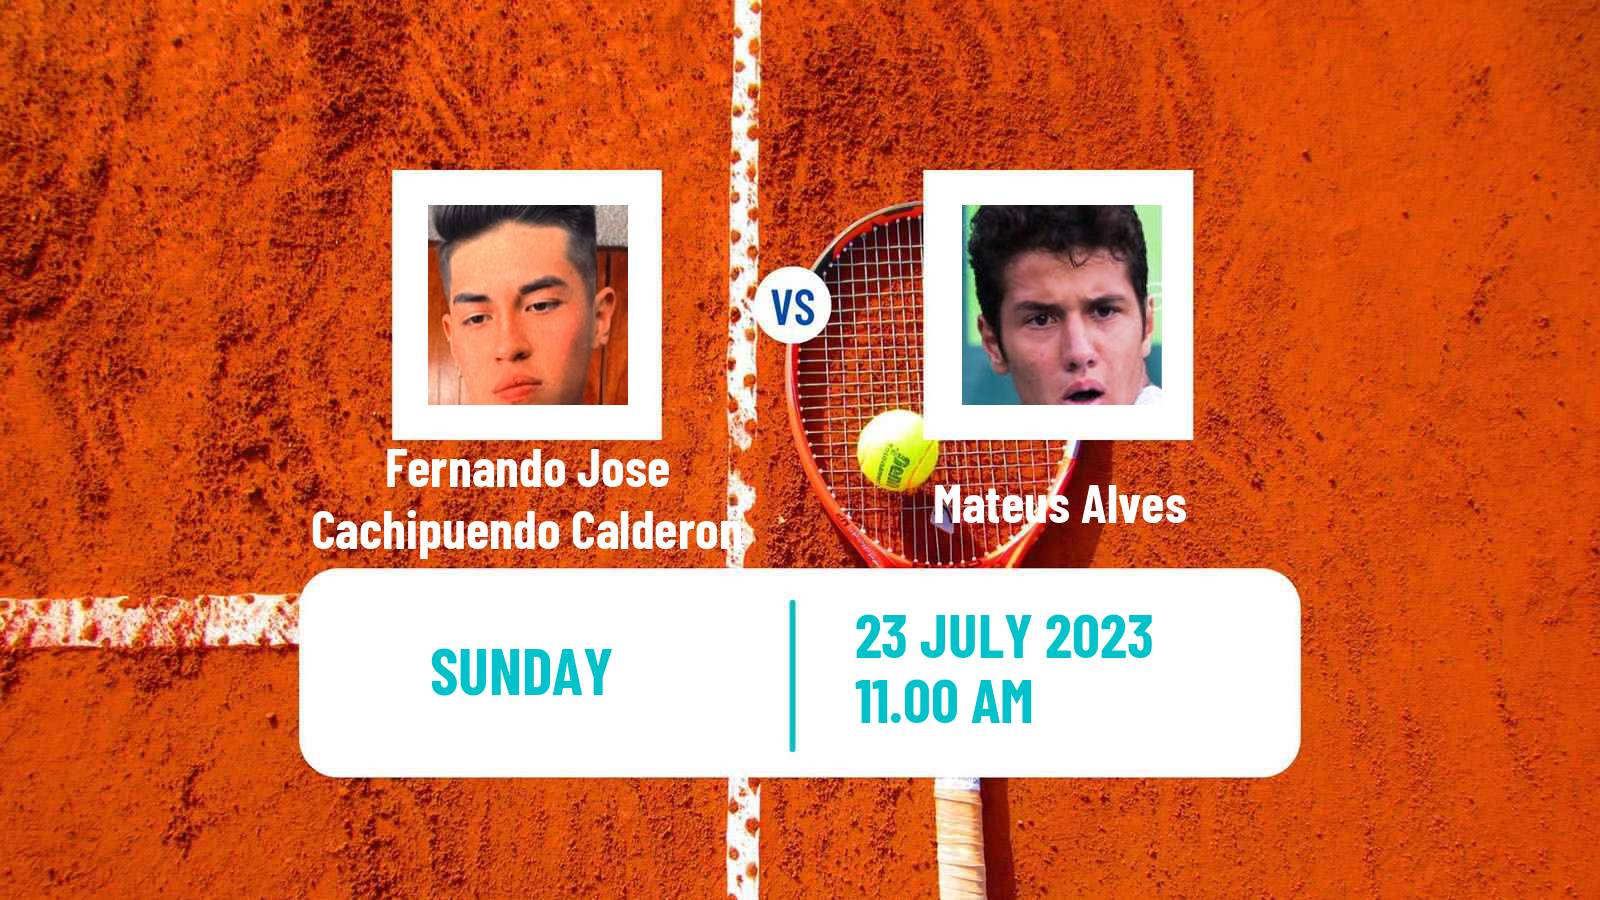 Tennis Salinas Challenger Men Fernando Jose Cachipuendo Calderon - Mateus Alves